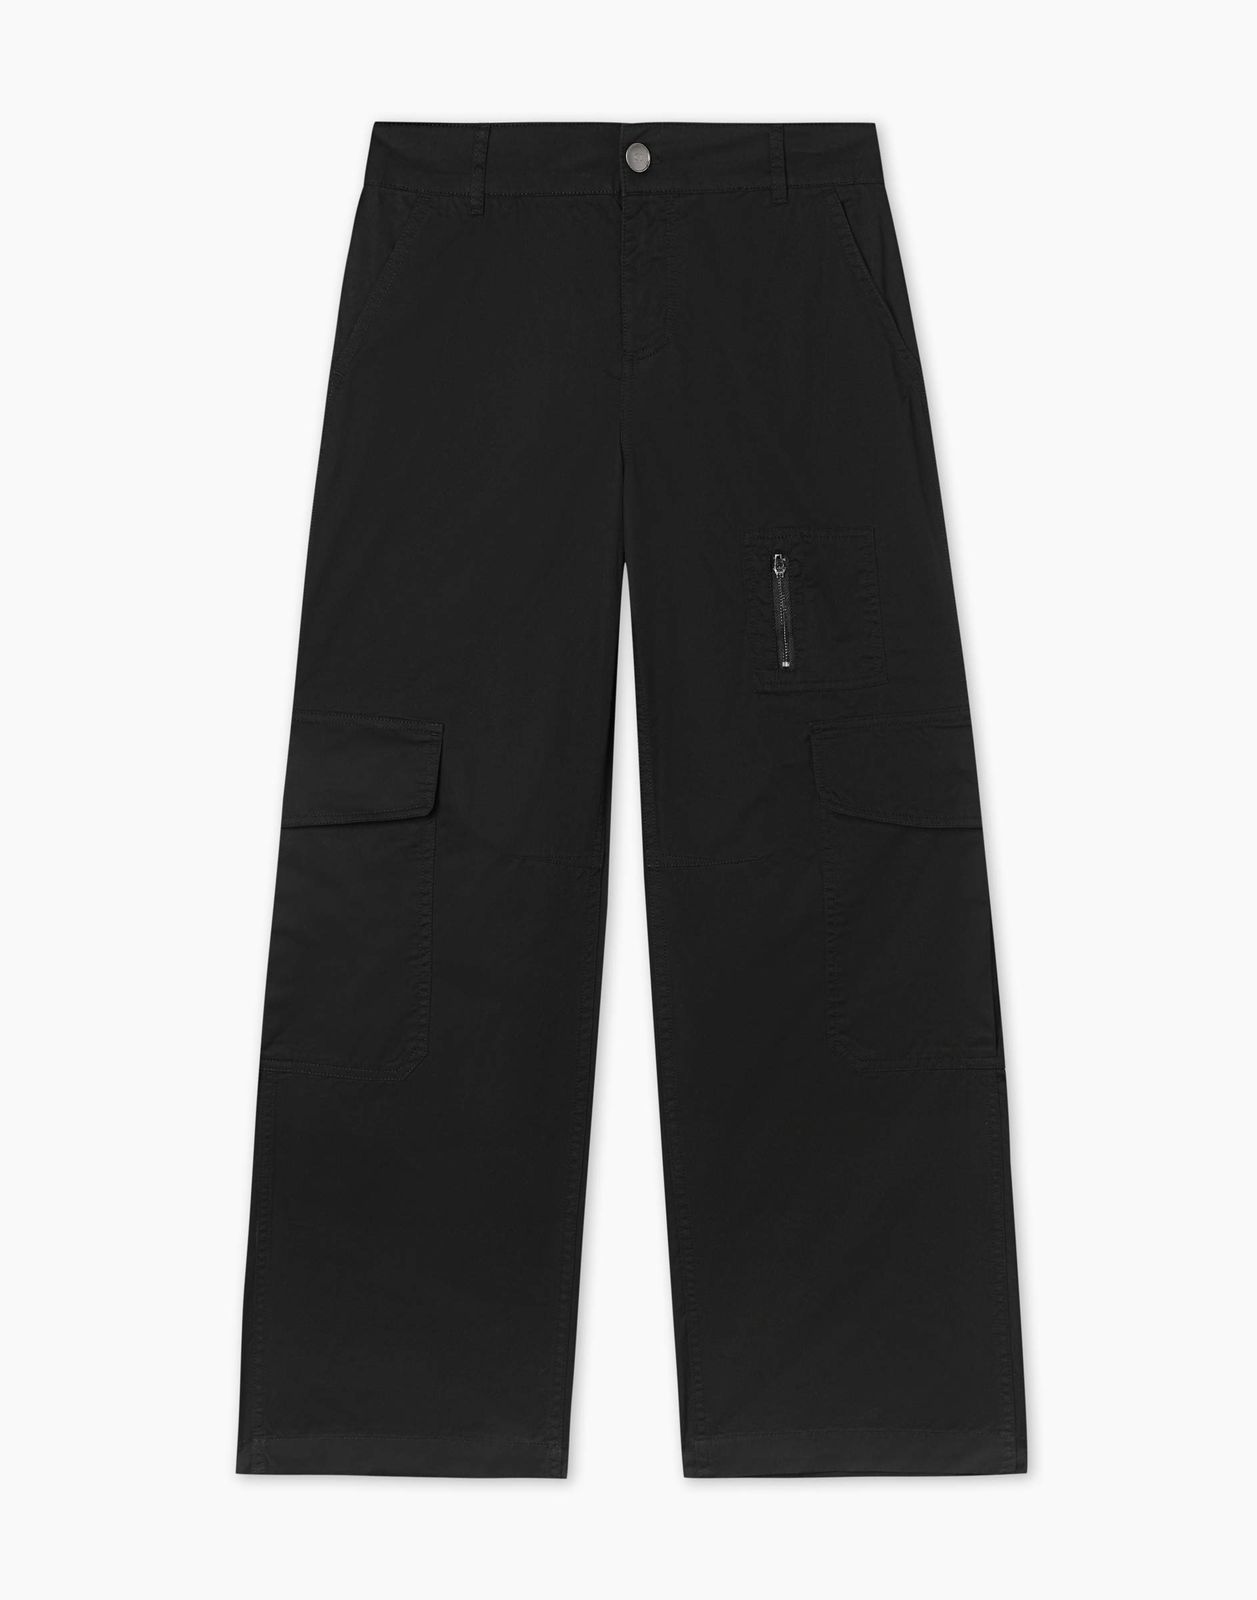 Брюки Gloria Jeans GPT009561 черный M/170 женские